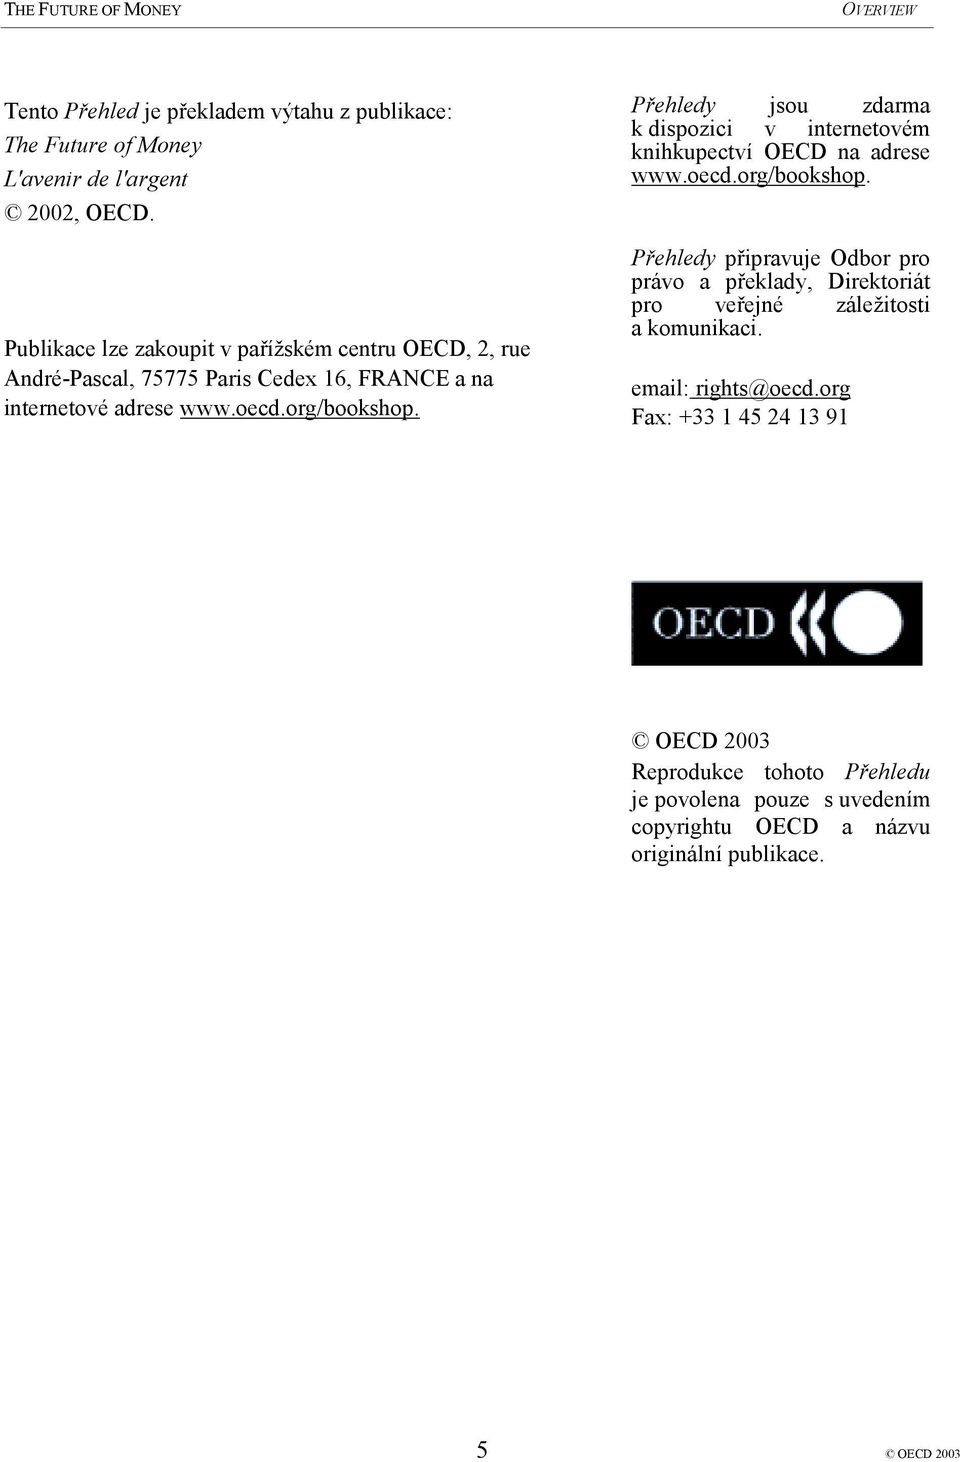 Přehledy jsou zdarma k dispozici v internetovém knihkupectví OECD na adrese www.oecd.org/bookshop.